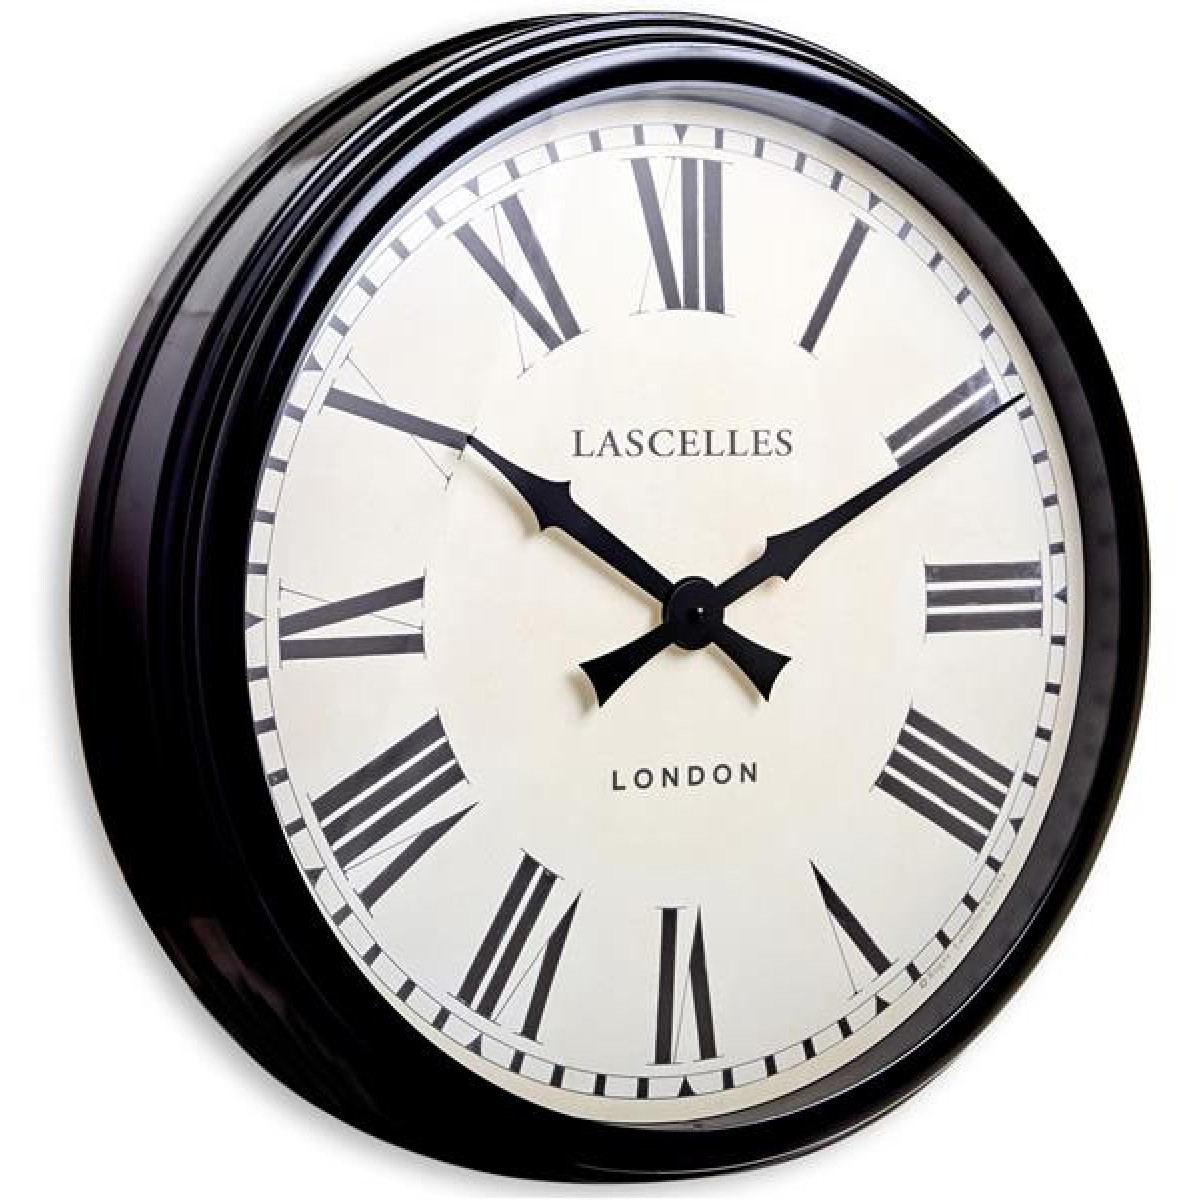 8 58 часов. Настенные часы Smith & co. Часы Roger Lascelles Clocks ot London. Часы классика метал Люкс. 58 Часов.